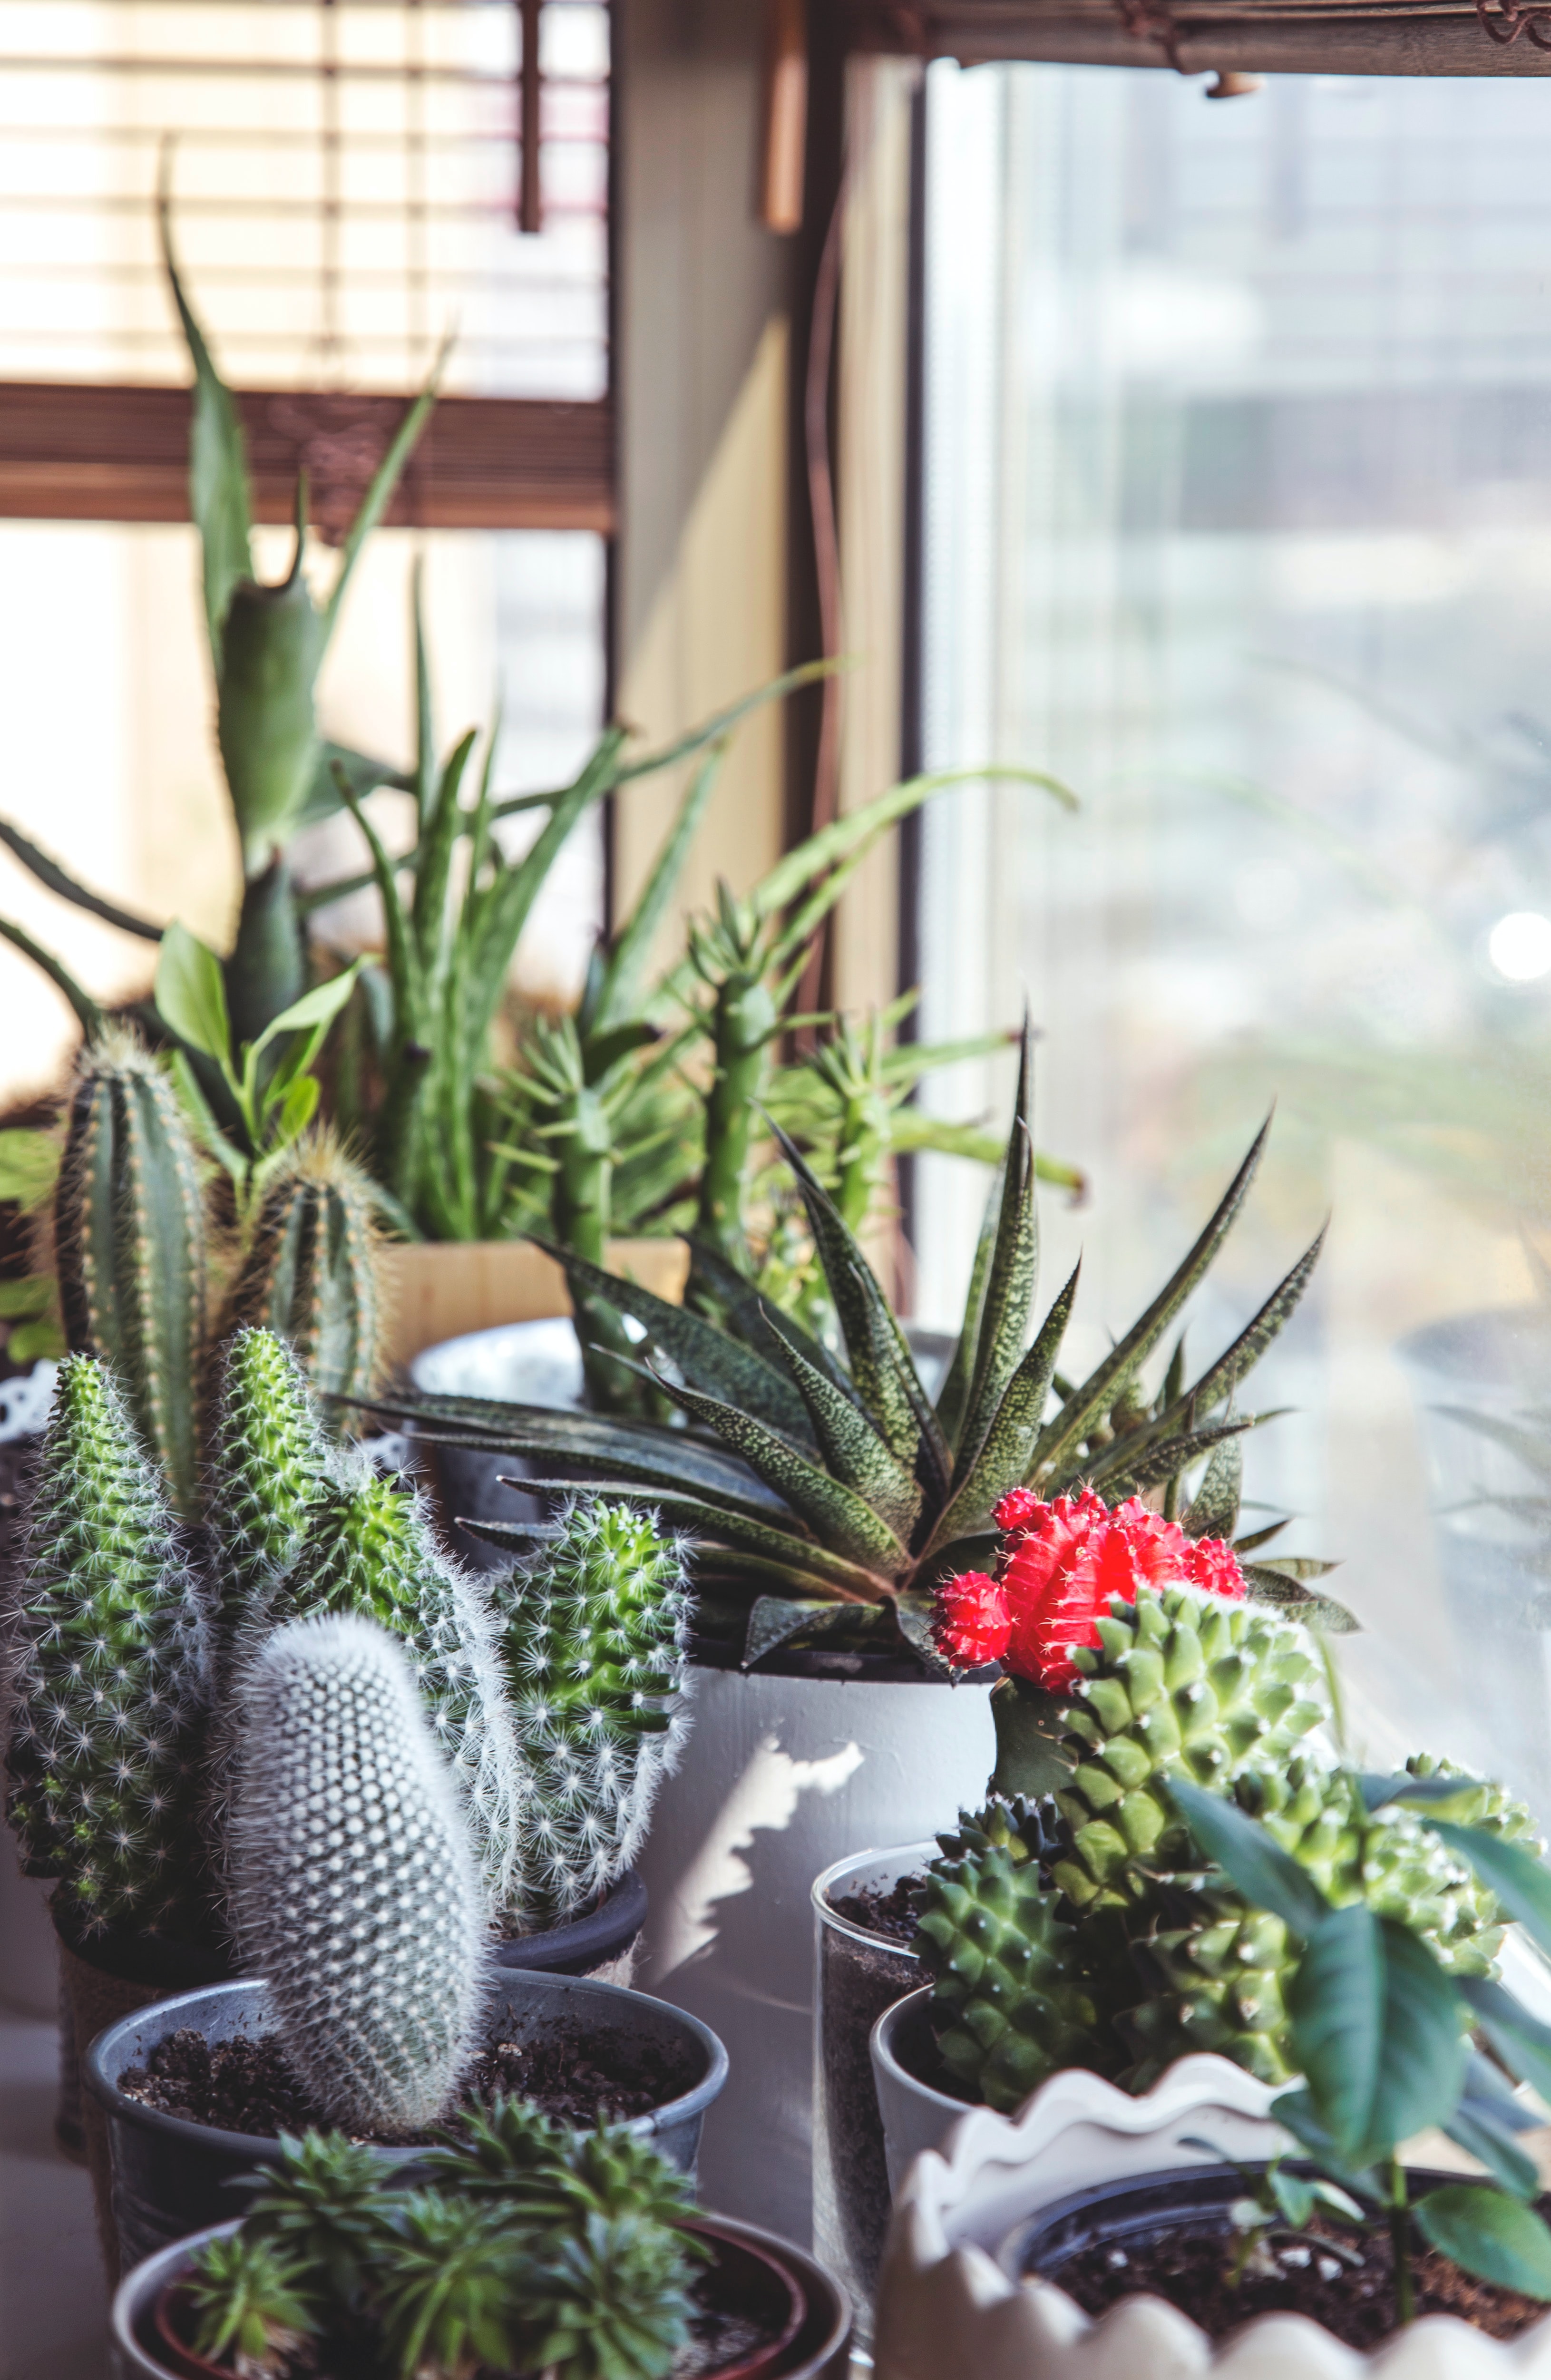 Différentes variétés de cactus disposées sur le rebord d'une fenêtre